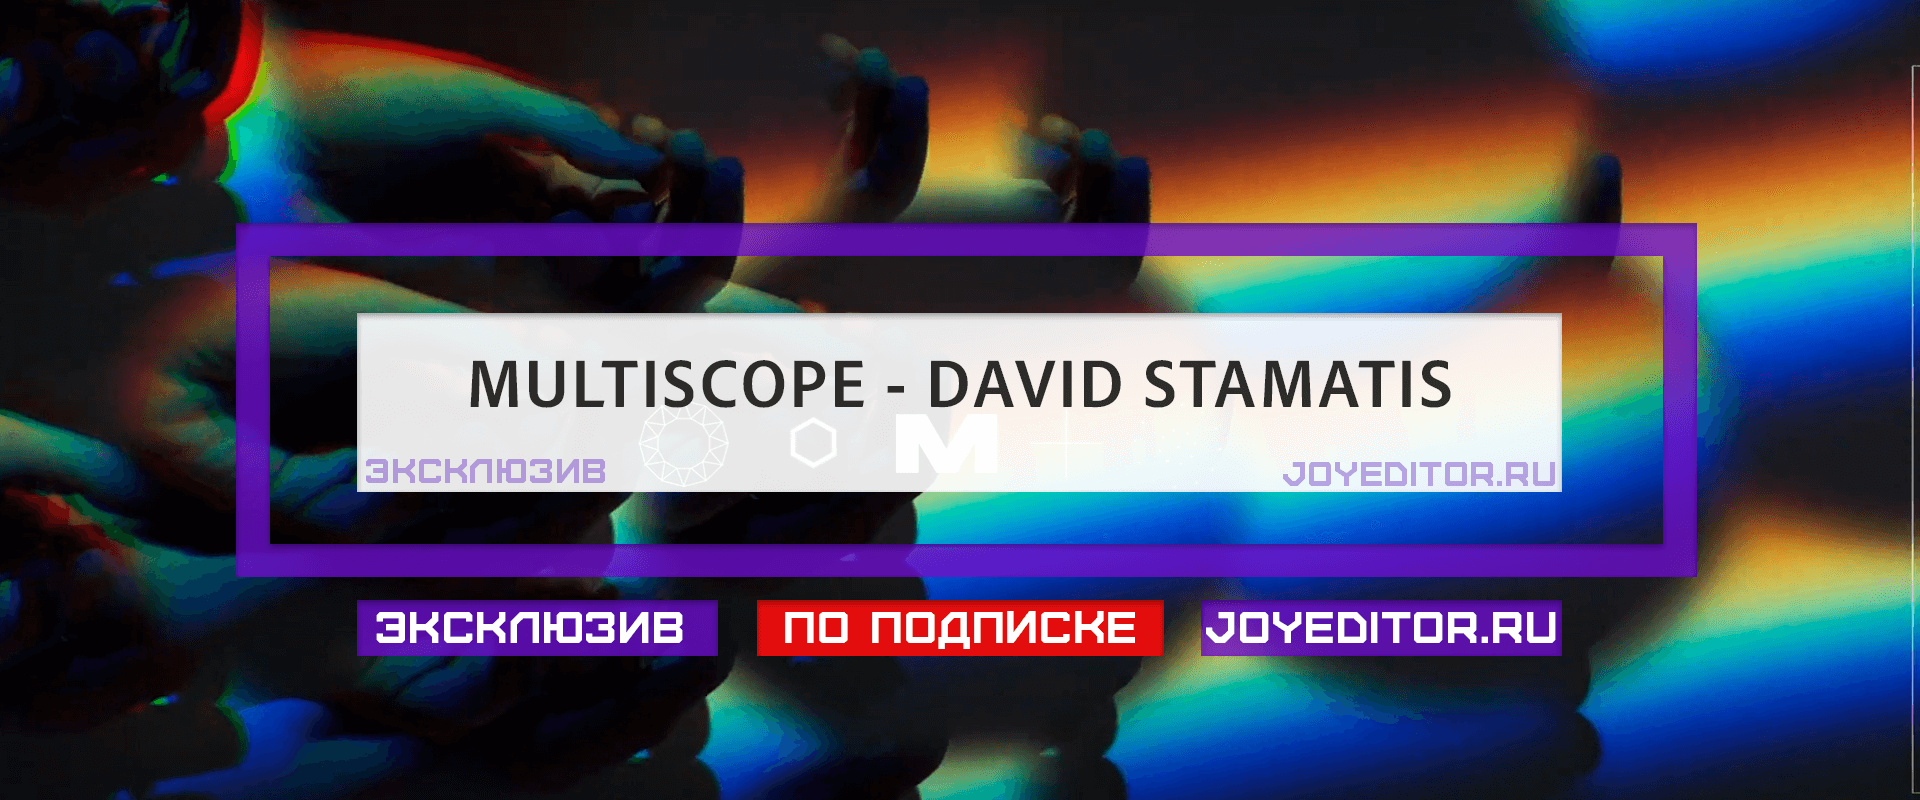 MULTISCOPE - DAVID STAMATIS